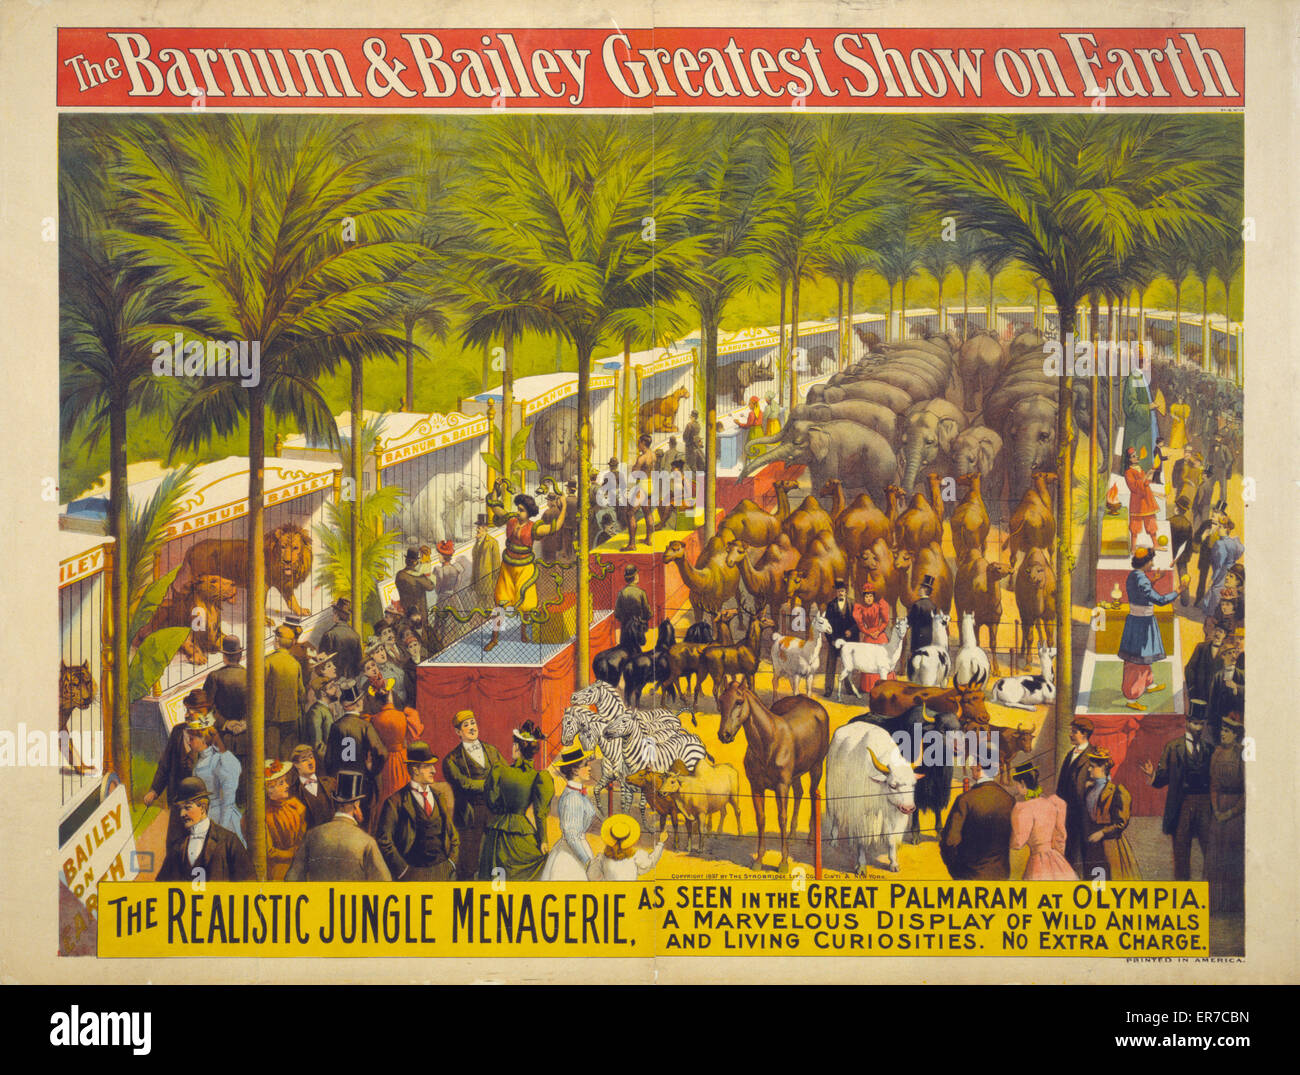 El mejor espectáculo de Barnum & Bailey en la Tierra - el realista j Foto de stock